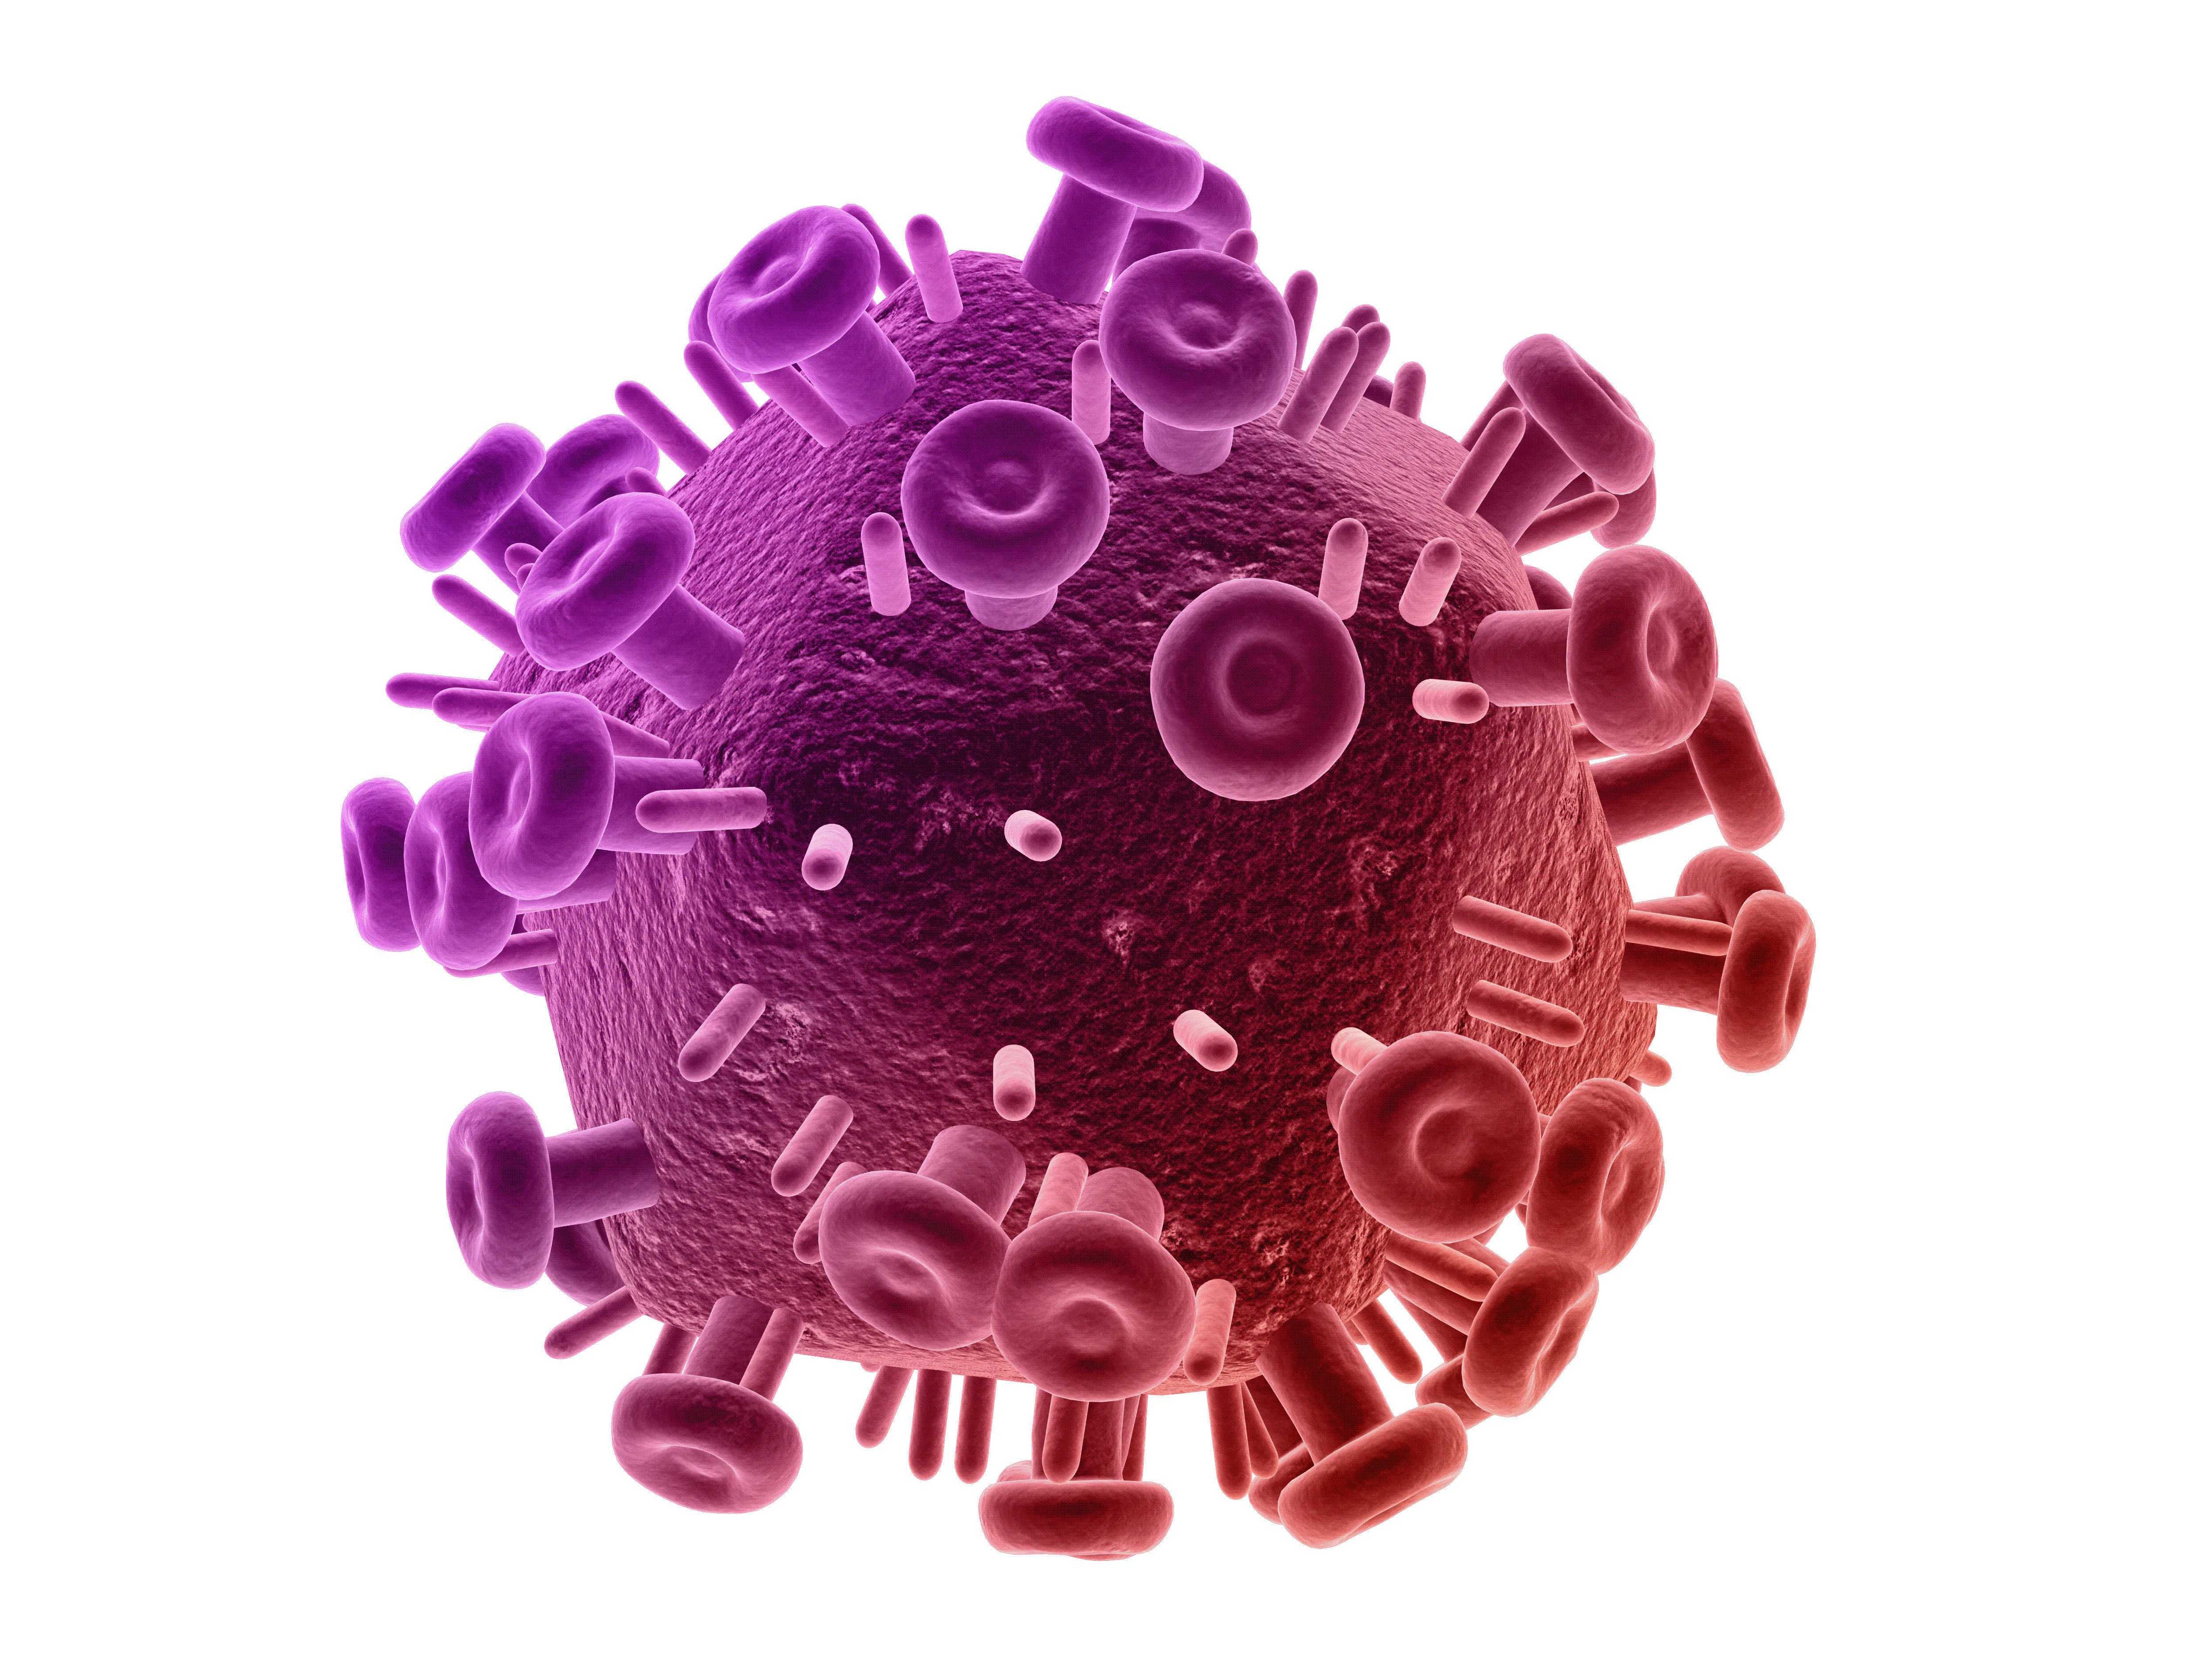 Algorithmus errechnet Risiko von HIV-Infektion